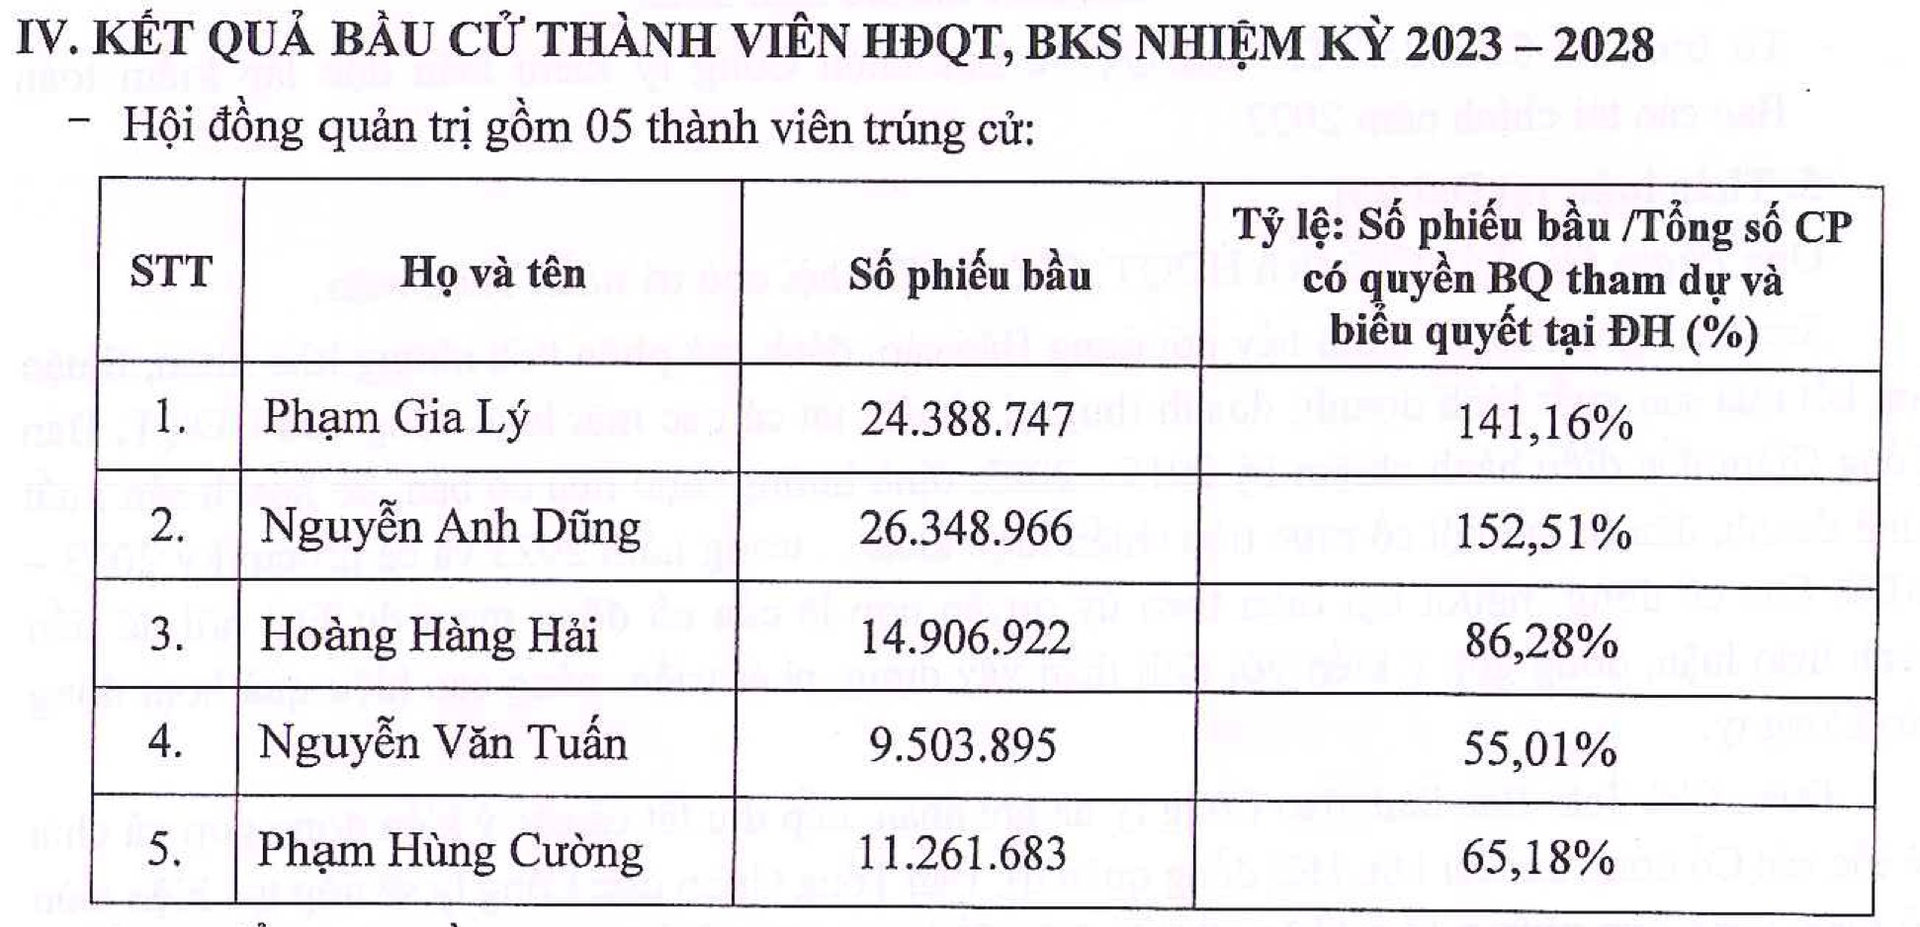 Ông Nguyễn Mạnh Tuấn "A7" rời HĐQT, L14 cân nhắc tiếp tục đầu tư chứng khoán - Ảnh 1.